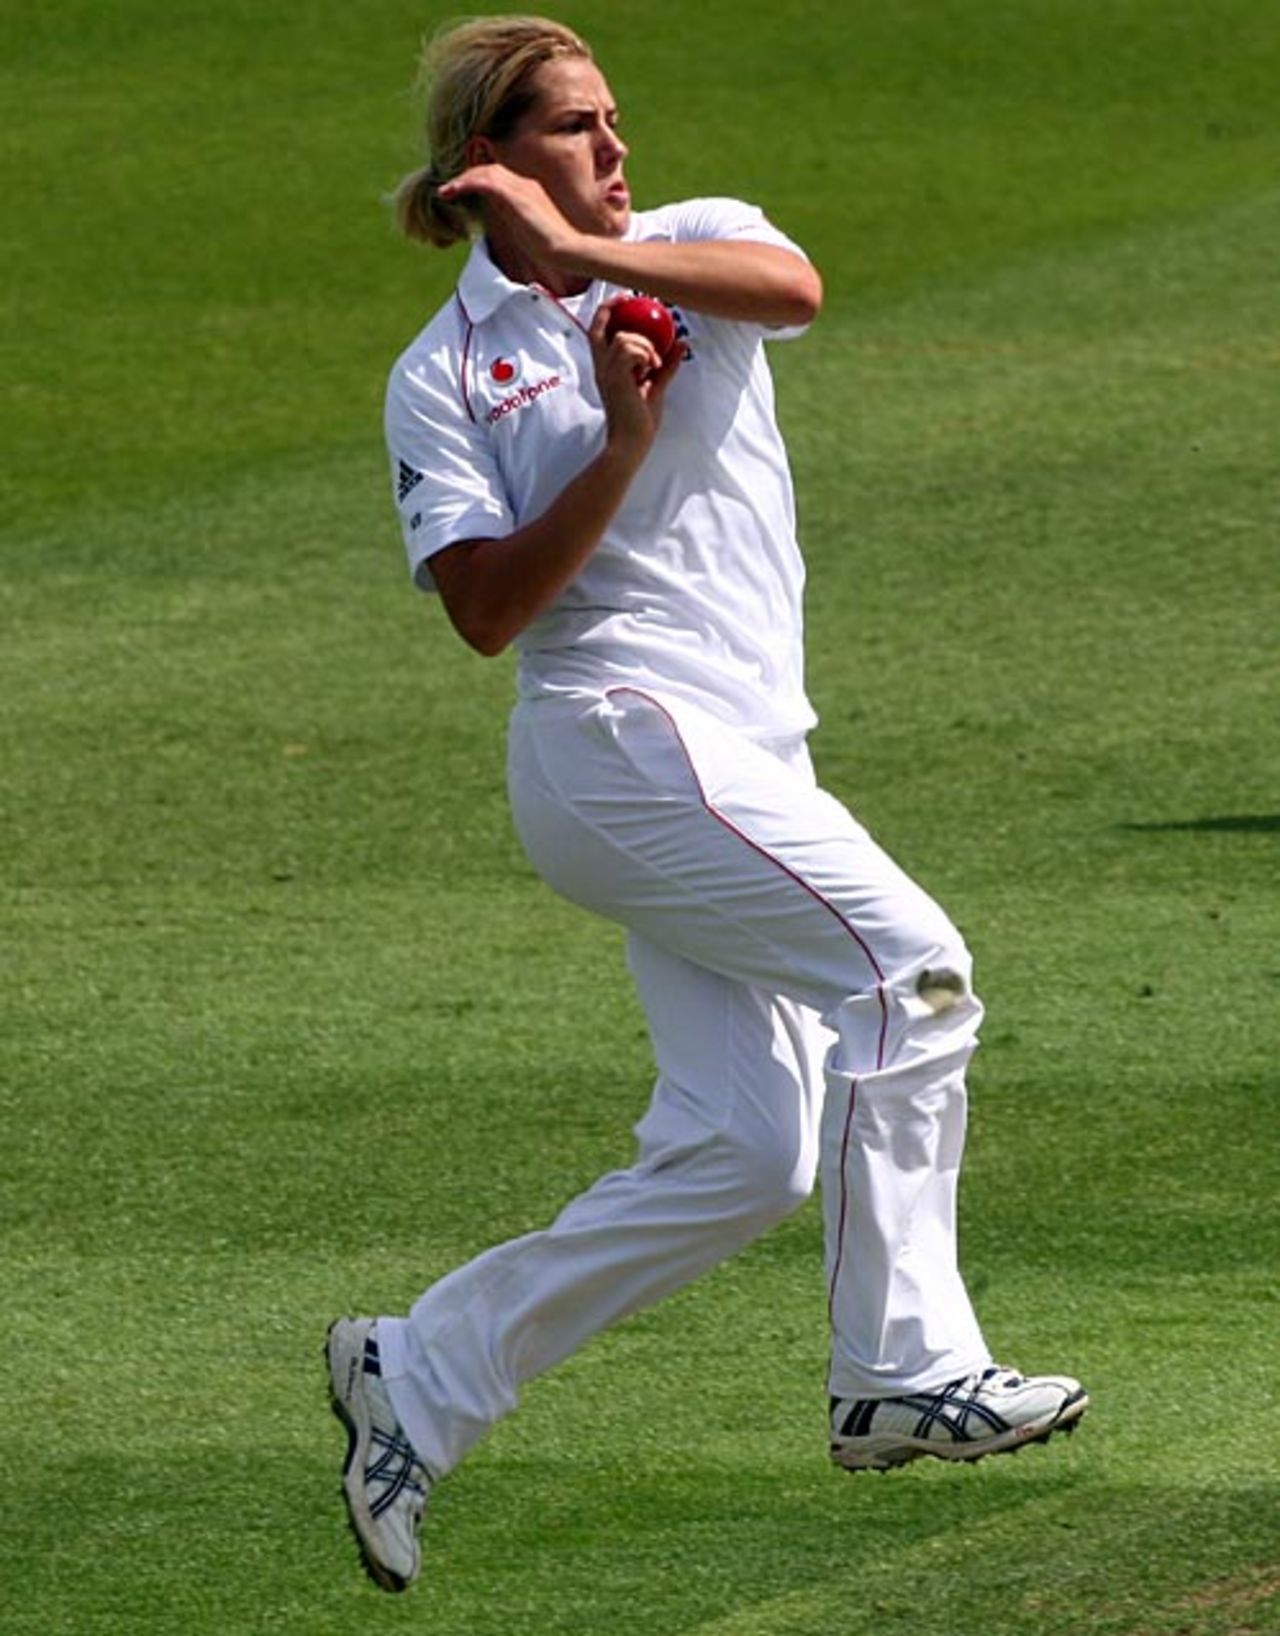 Katherine Brunt bowls, England v Australia, women's Test, Worcester, 1st day, July 10, 2009